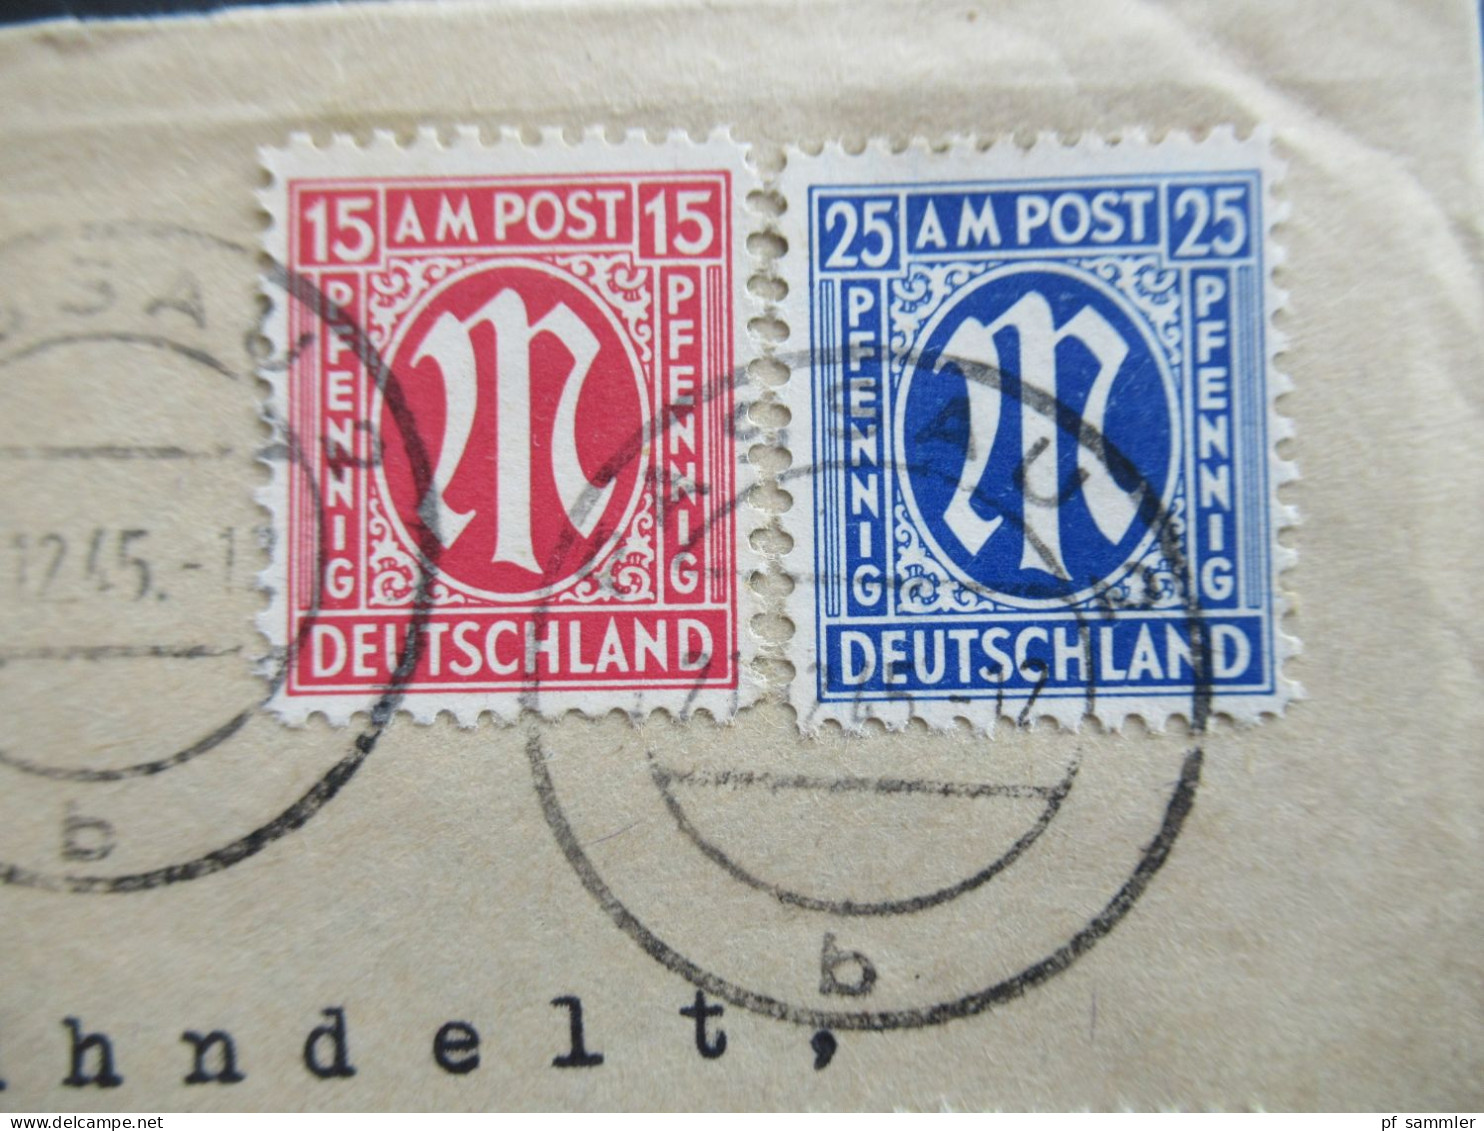 Am Post 21.12.1945 MiF Am. Druck / Deutscher Druck Nr.16 Unterrand Einschreiben Not R-Zettel Passau 2 - Osnabrück - Lettres & Documents